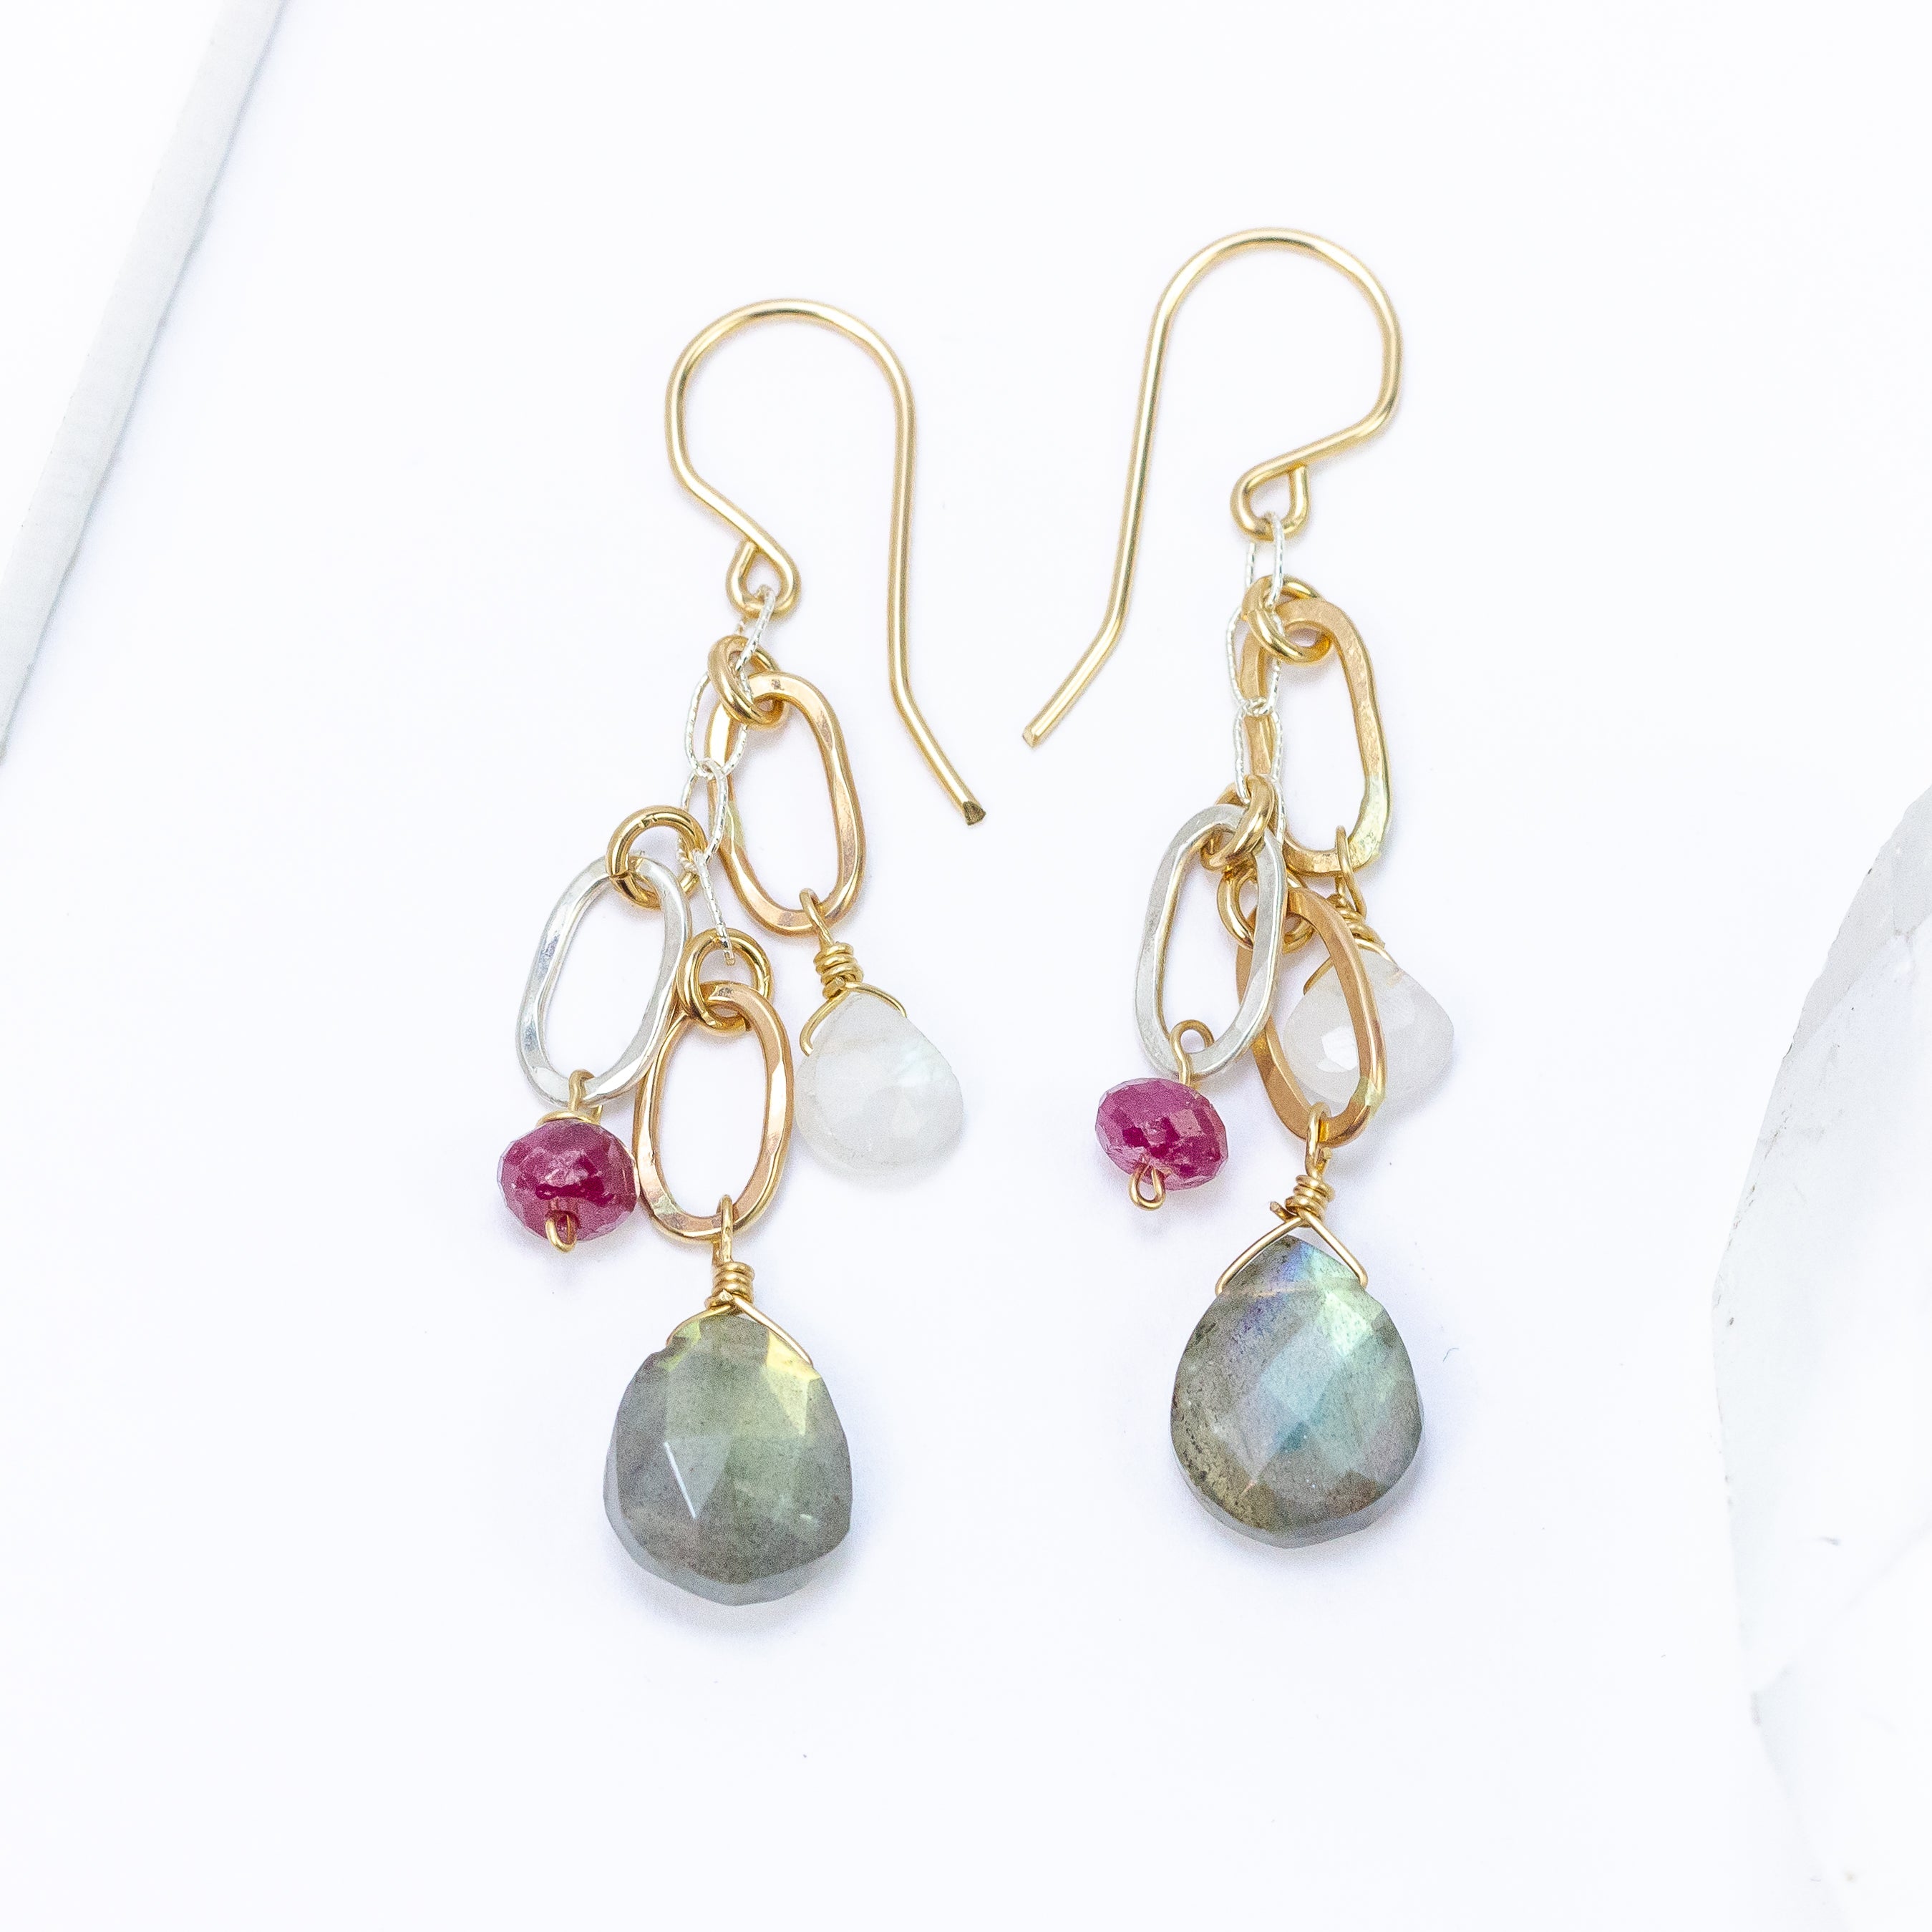 handmade mixed metal gemstone earrings laura j designs